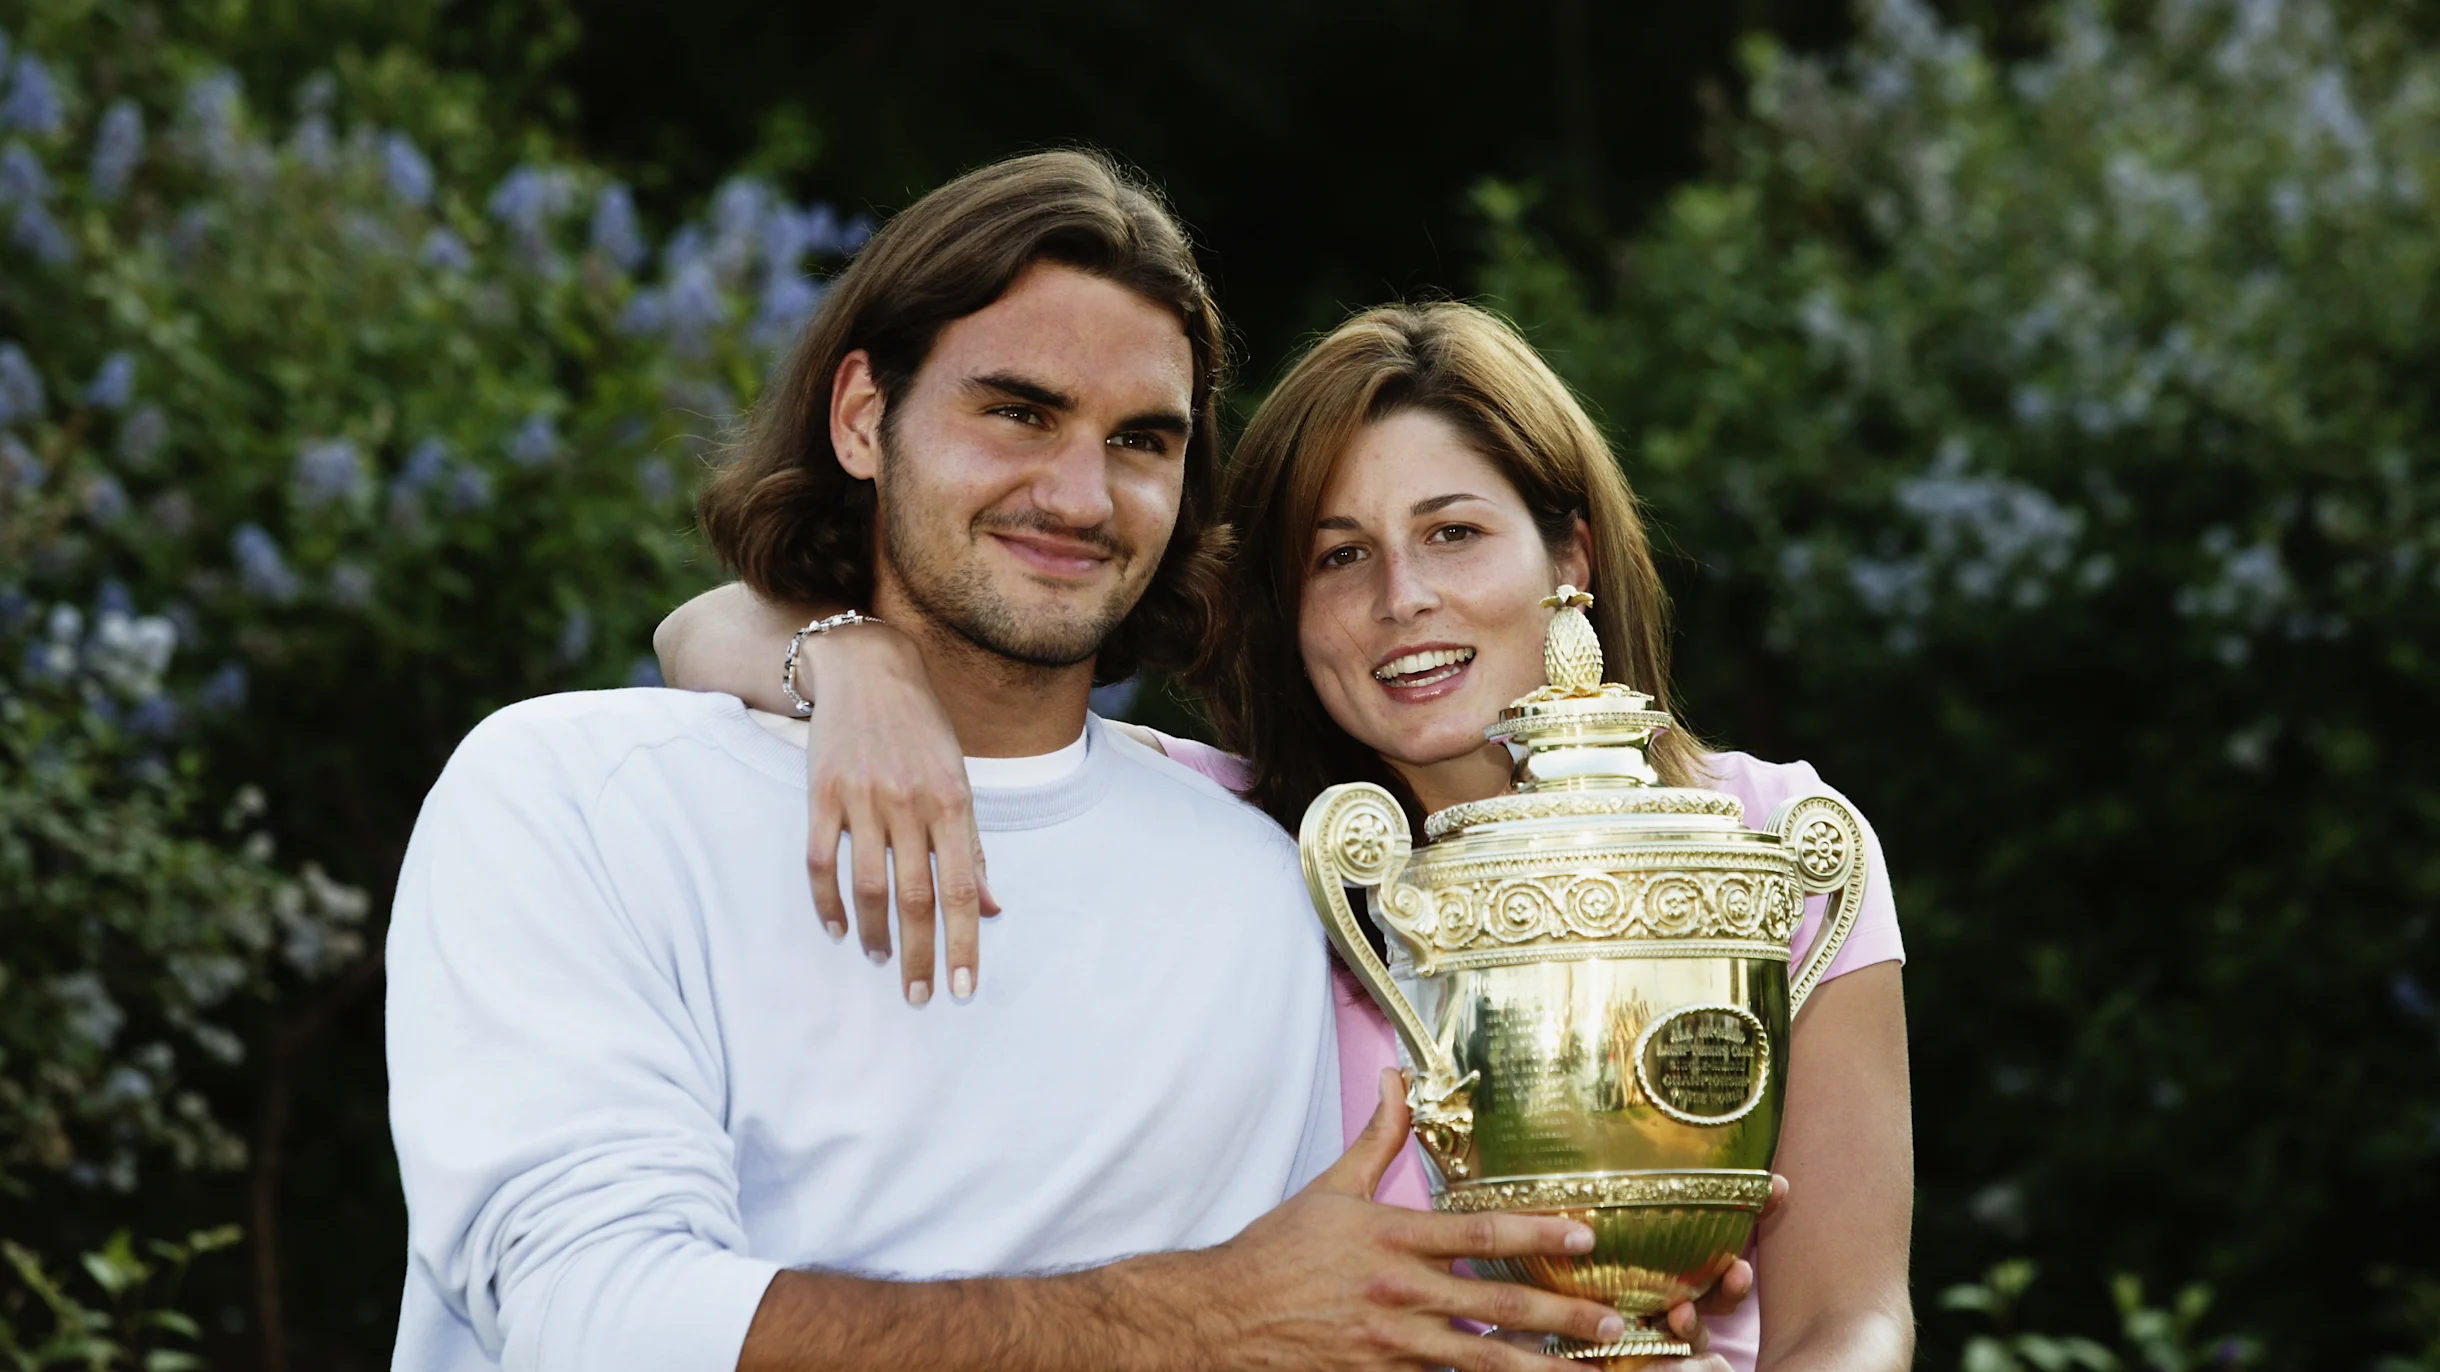 Mirka and Roger Federer